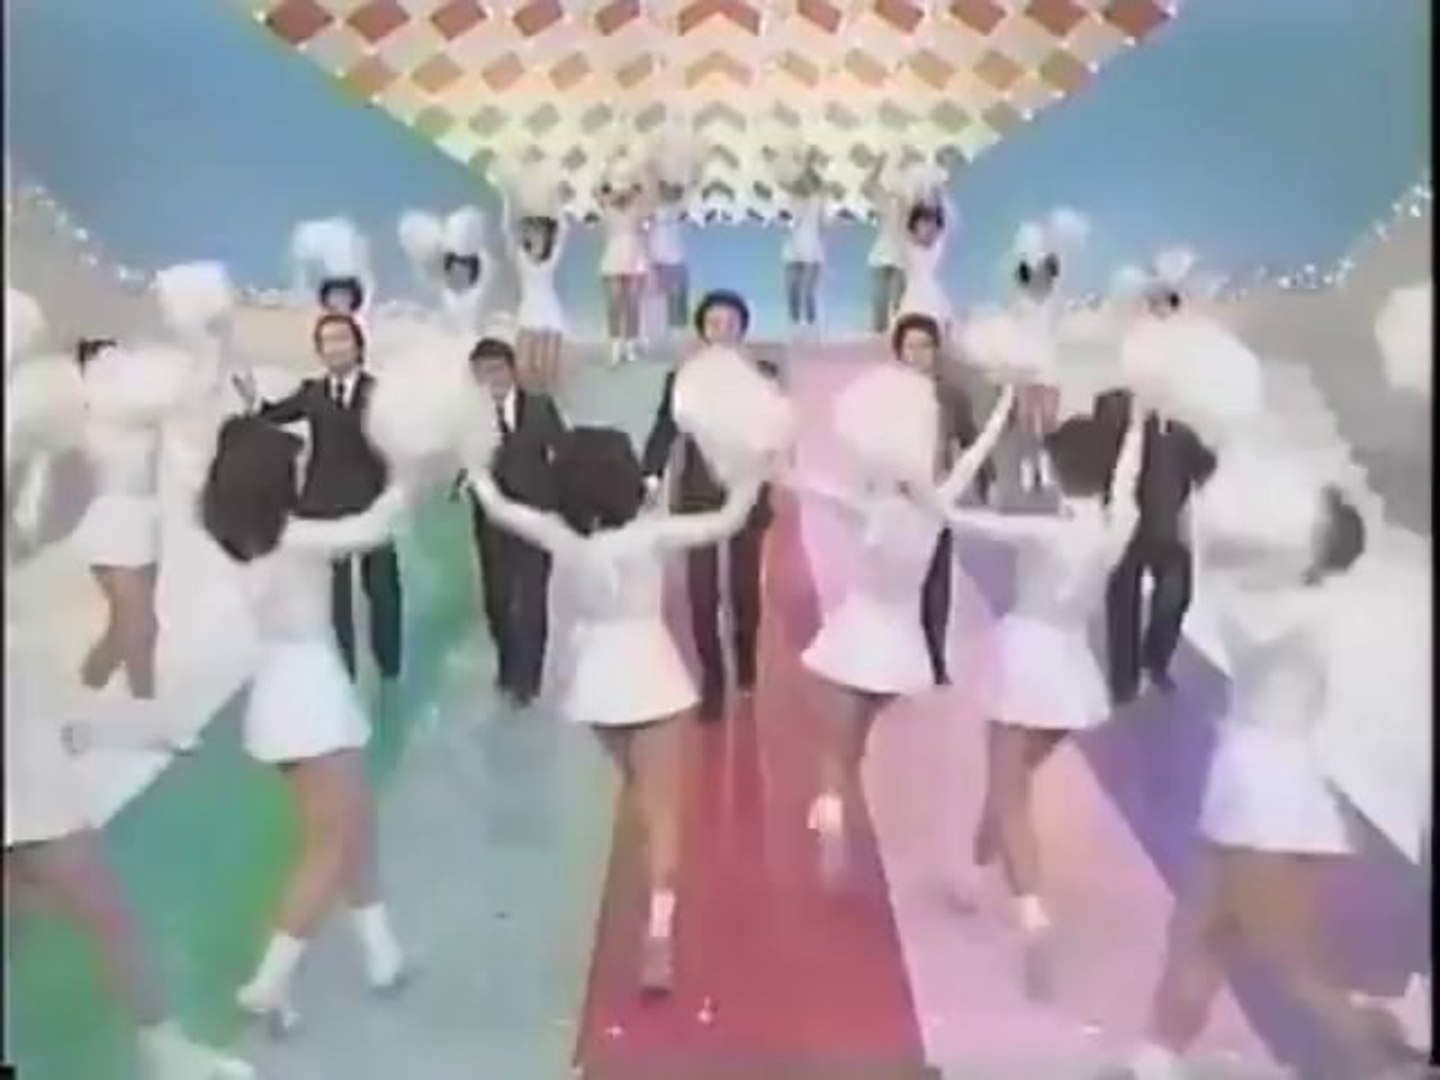 ドリフ パンチラ スクールメイツ、懐かしのドリフダンス披露 - YouTube